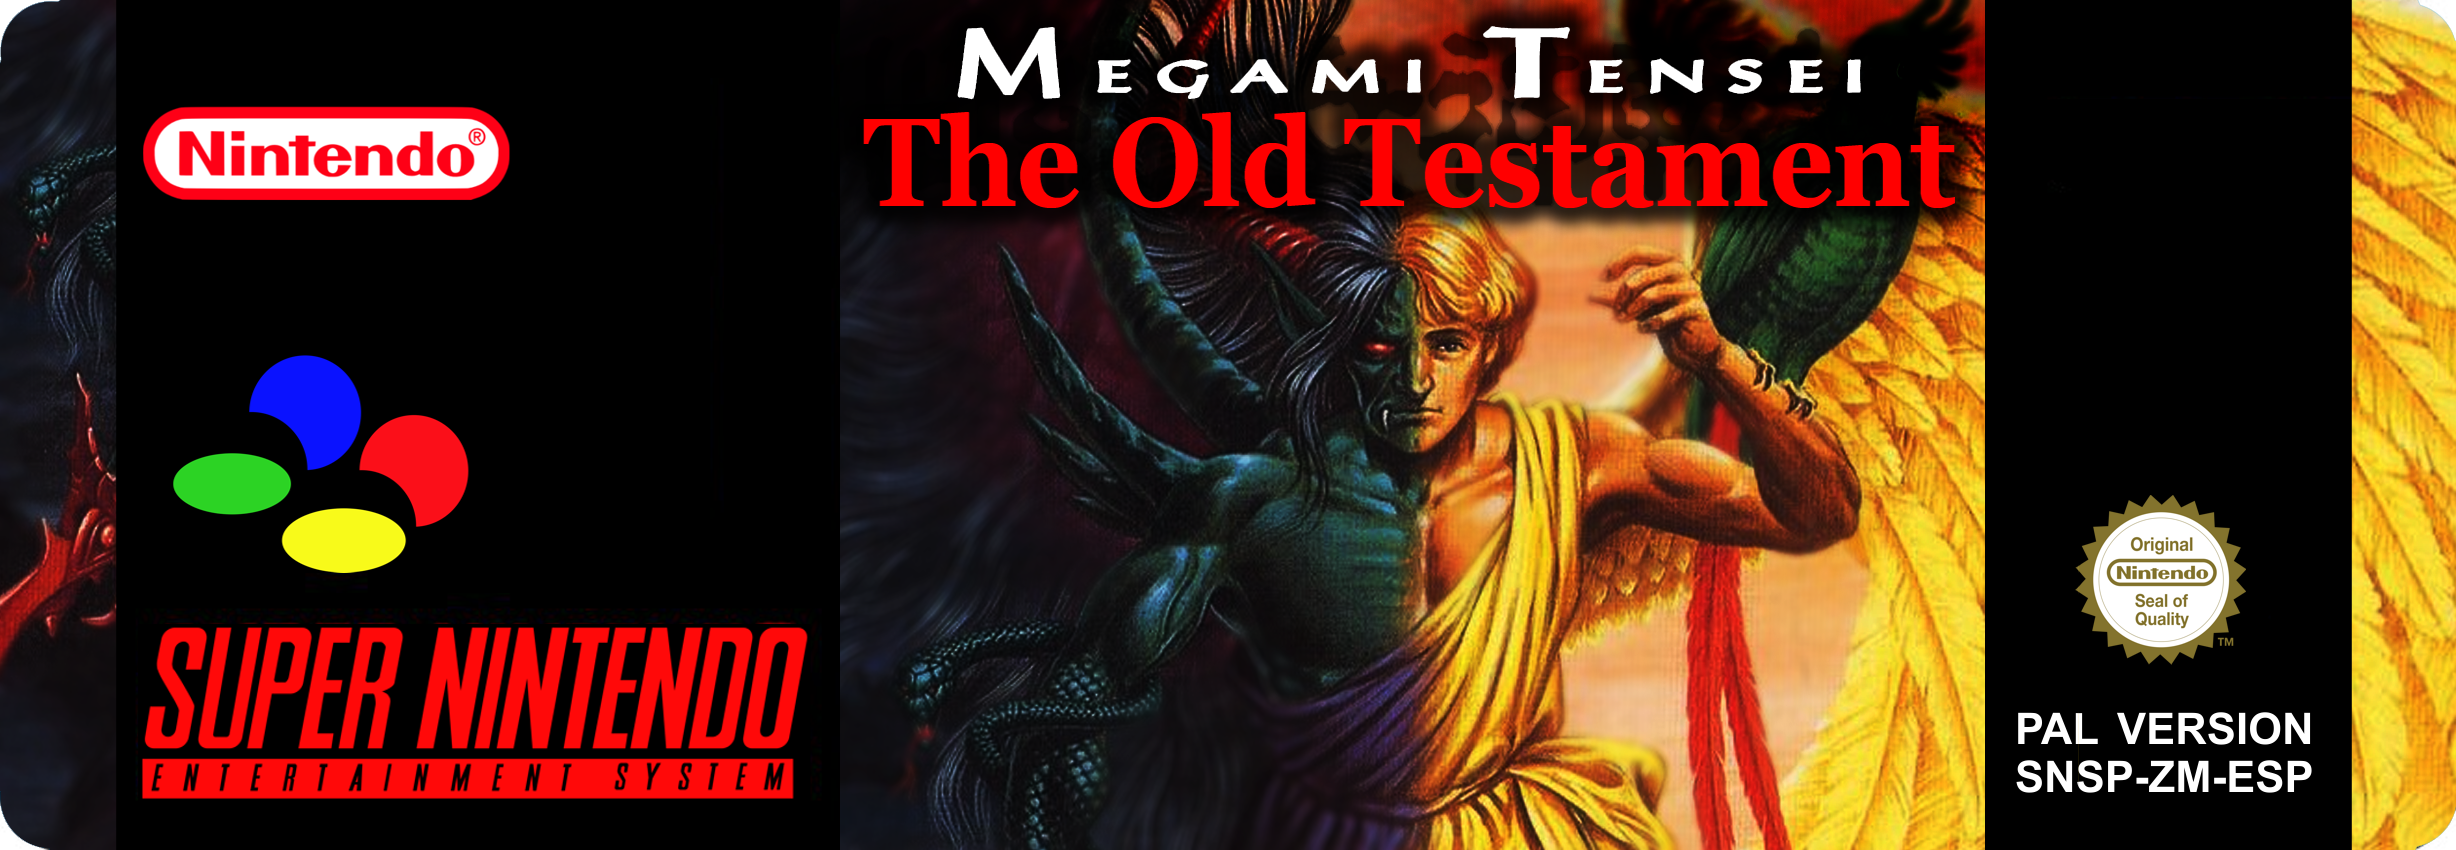 Megami Tensei : The Old Testament box cover